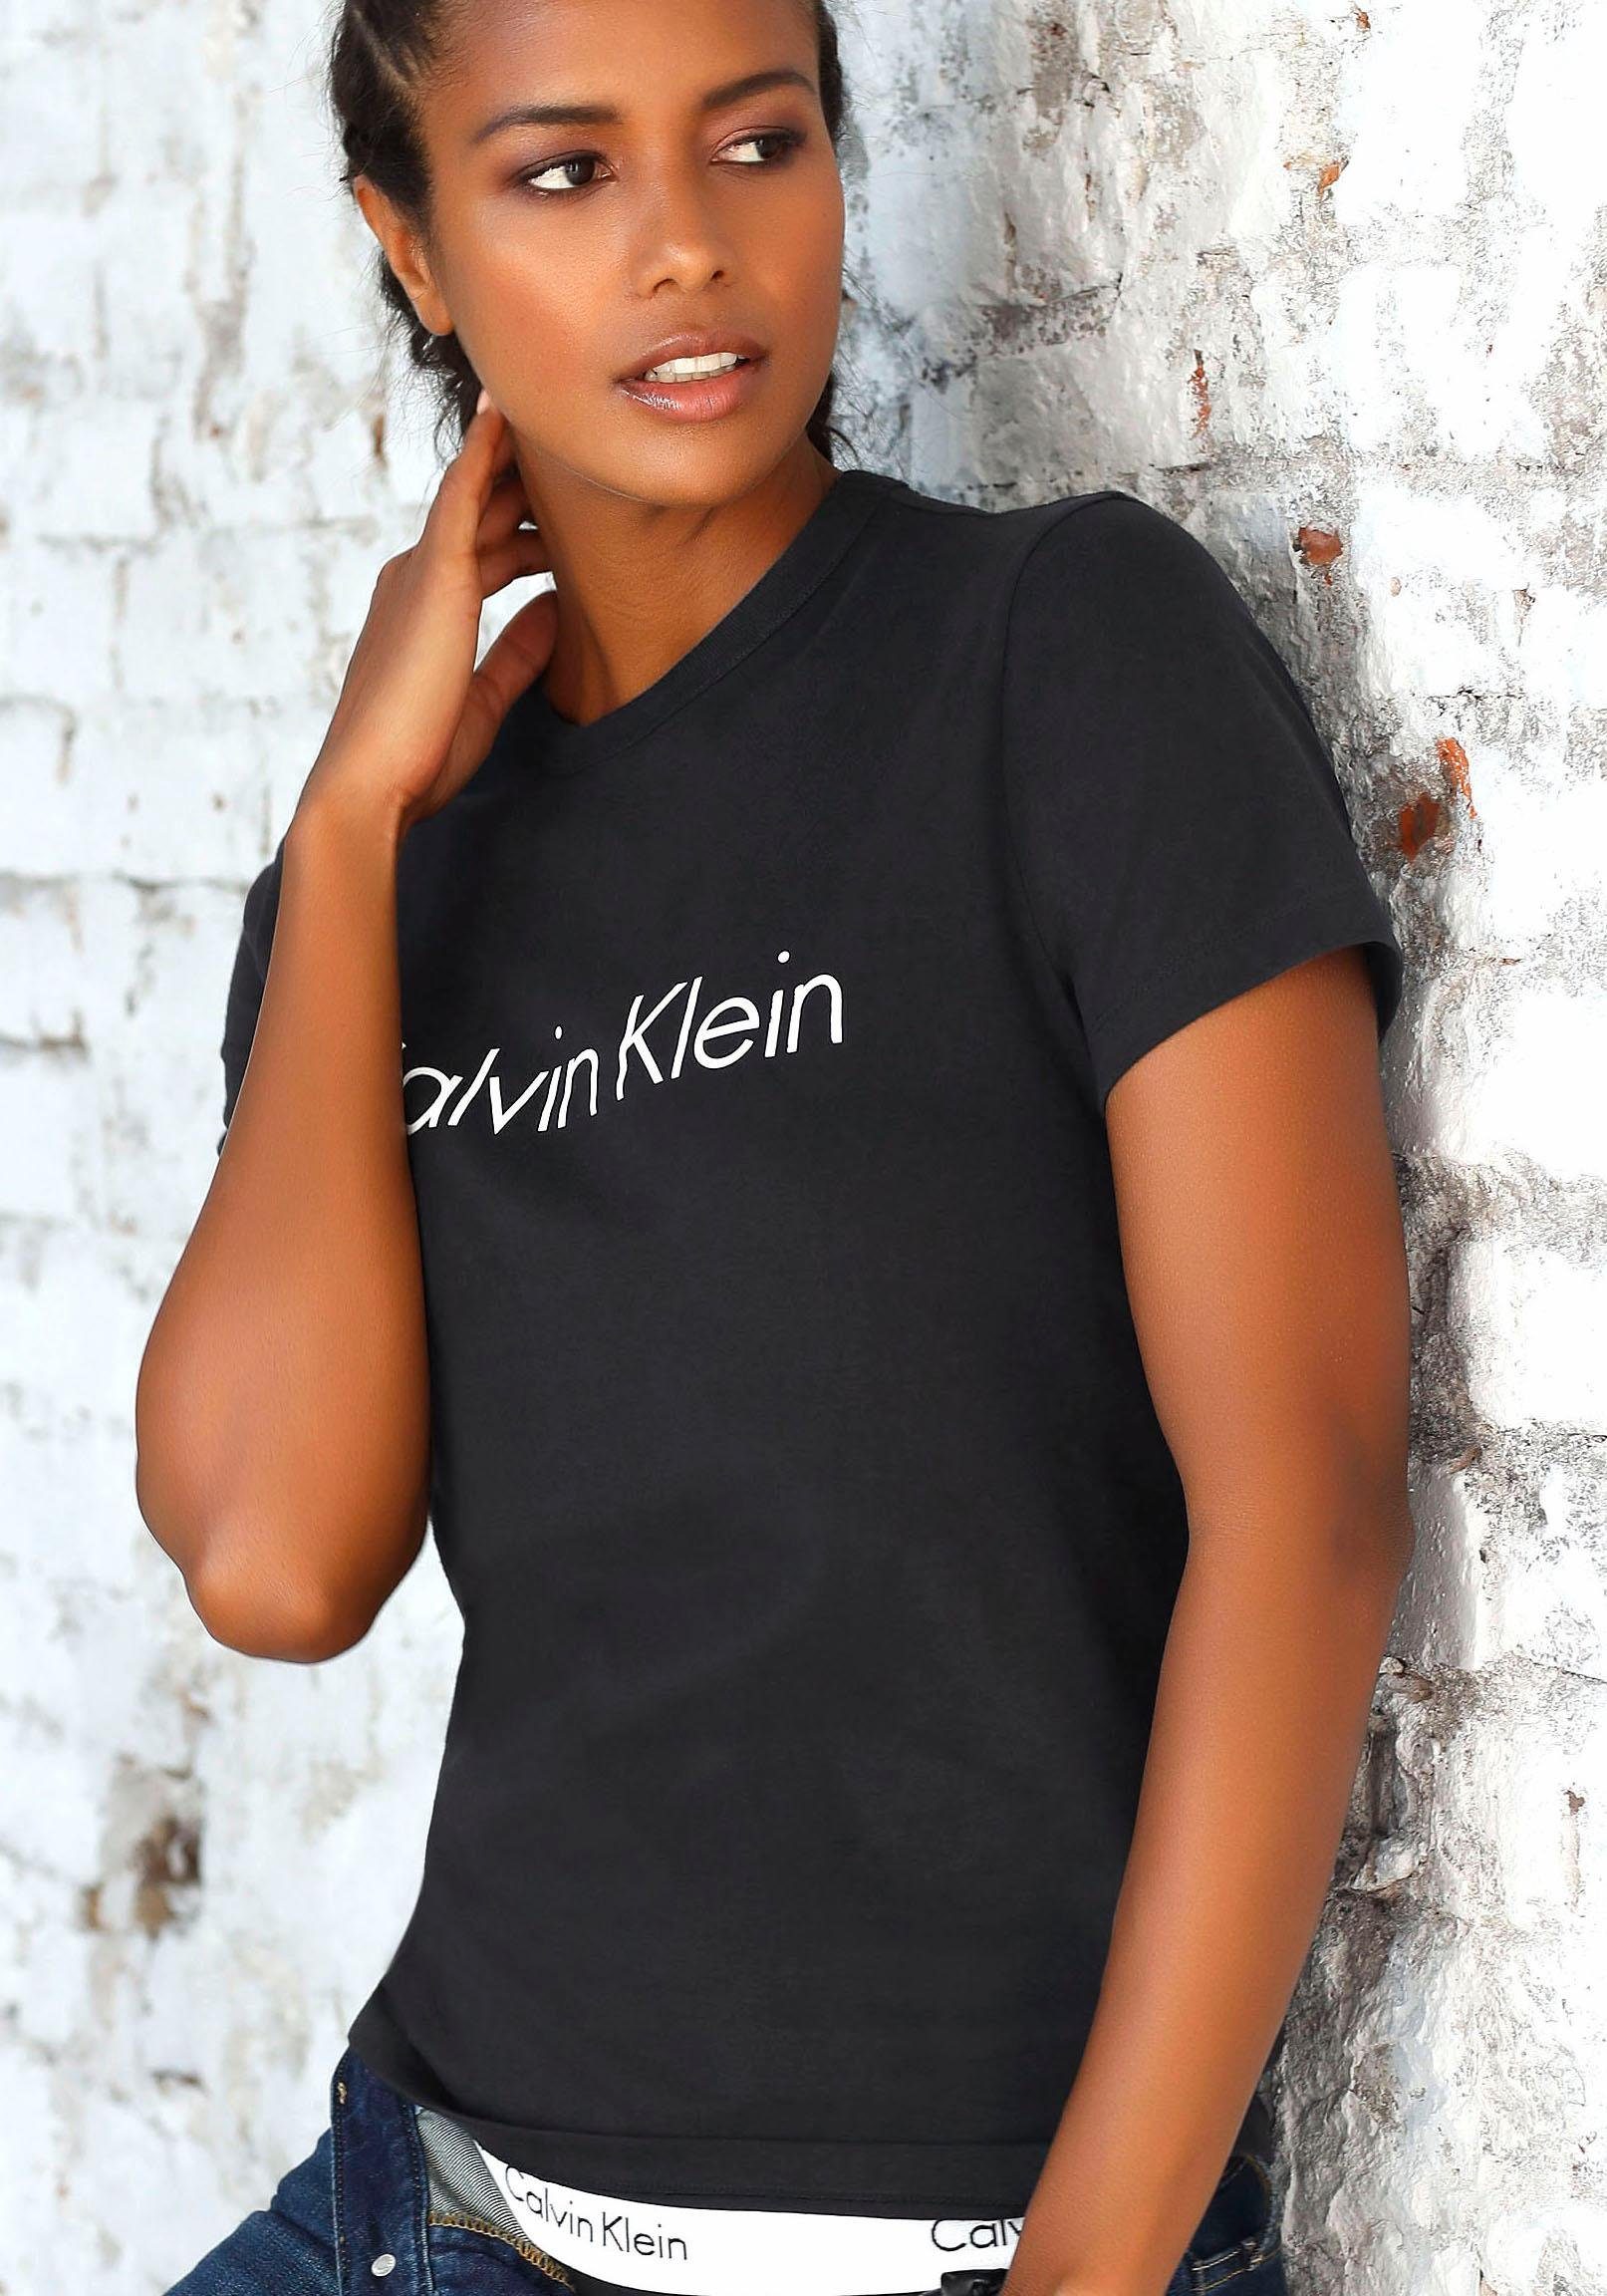 Calvin Klein T-Shirt mit großem Logodruck